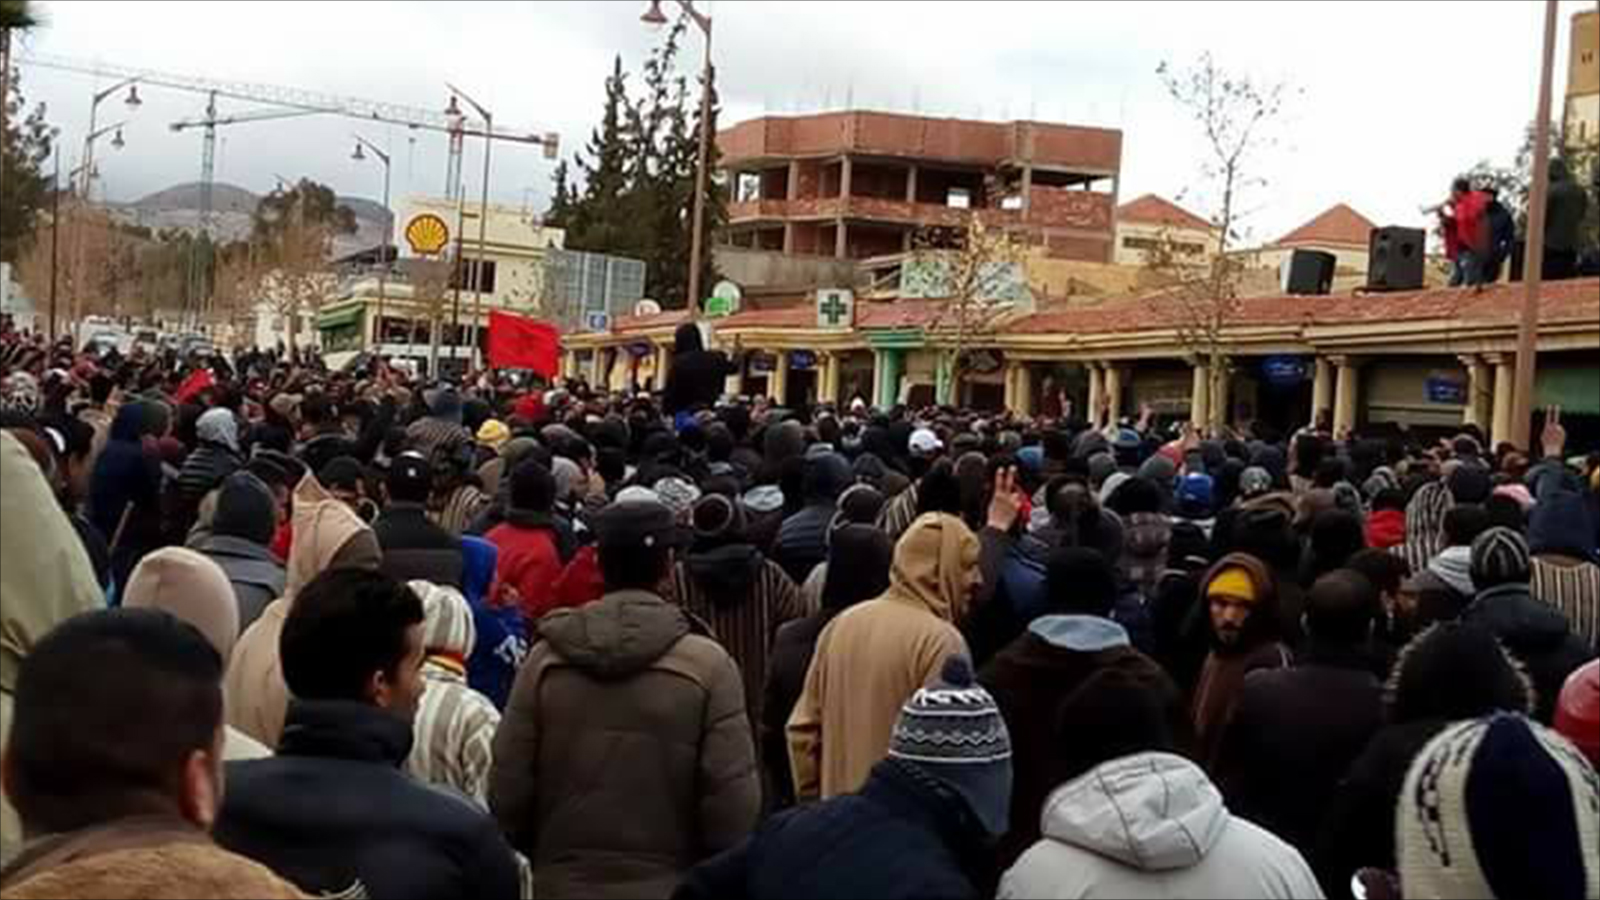 احتجاجات بمدينة جرادة شرقي المغرب بعد وفاة عمال استخراج الفحم نهاية ديسمبر/كانون الأول 2017 (مواقع التواصل الاجتماعي)